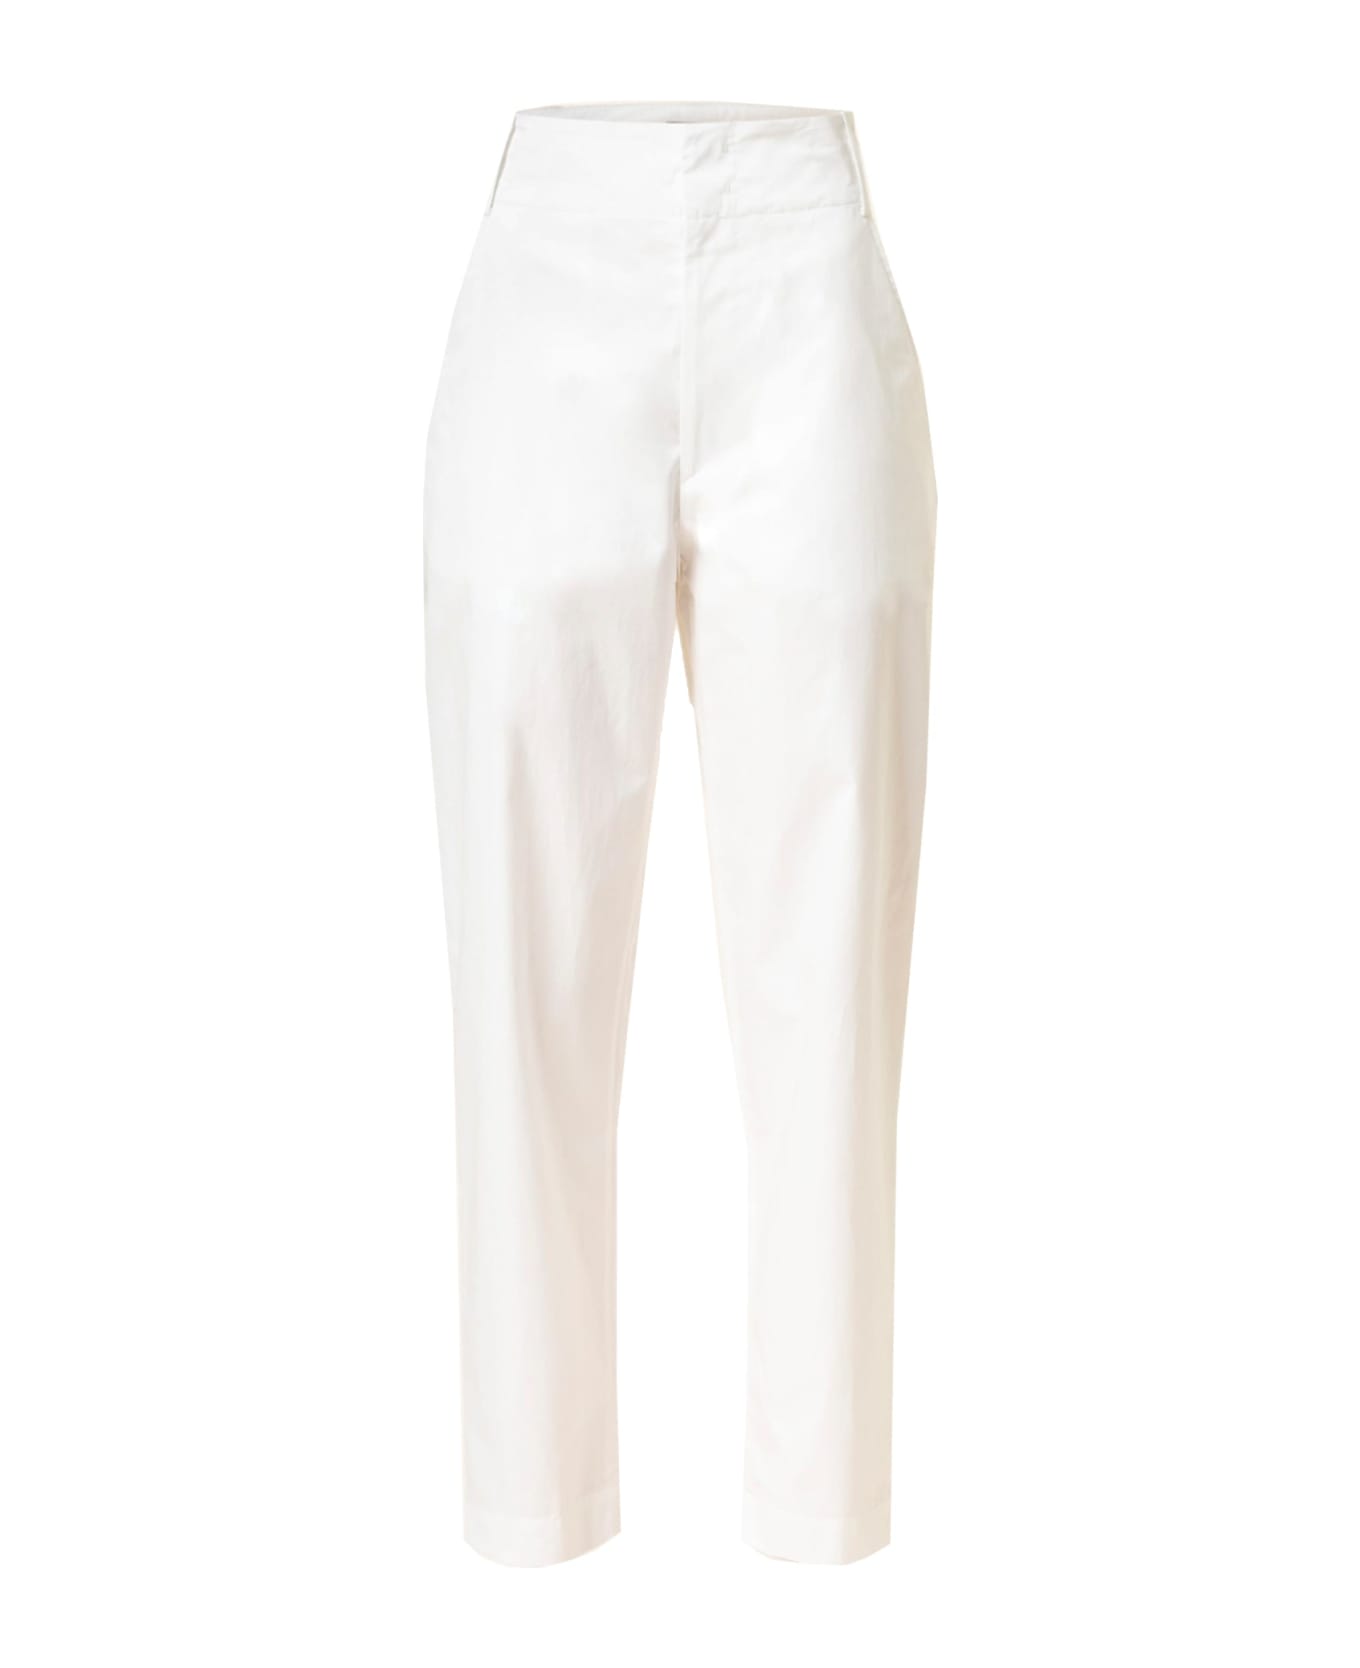 Marant Étoile Isabel Marant Etoil Nestoe Cotton Pants - White